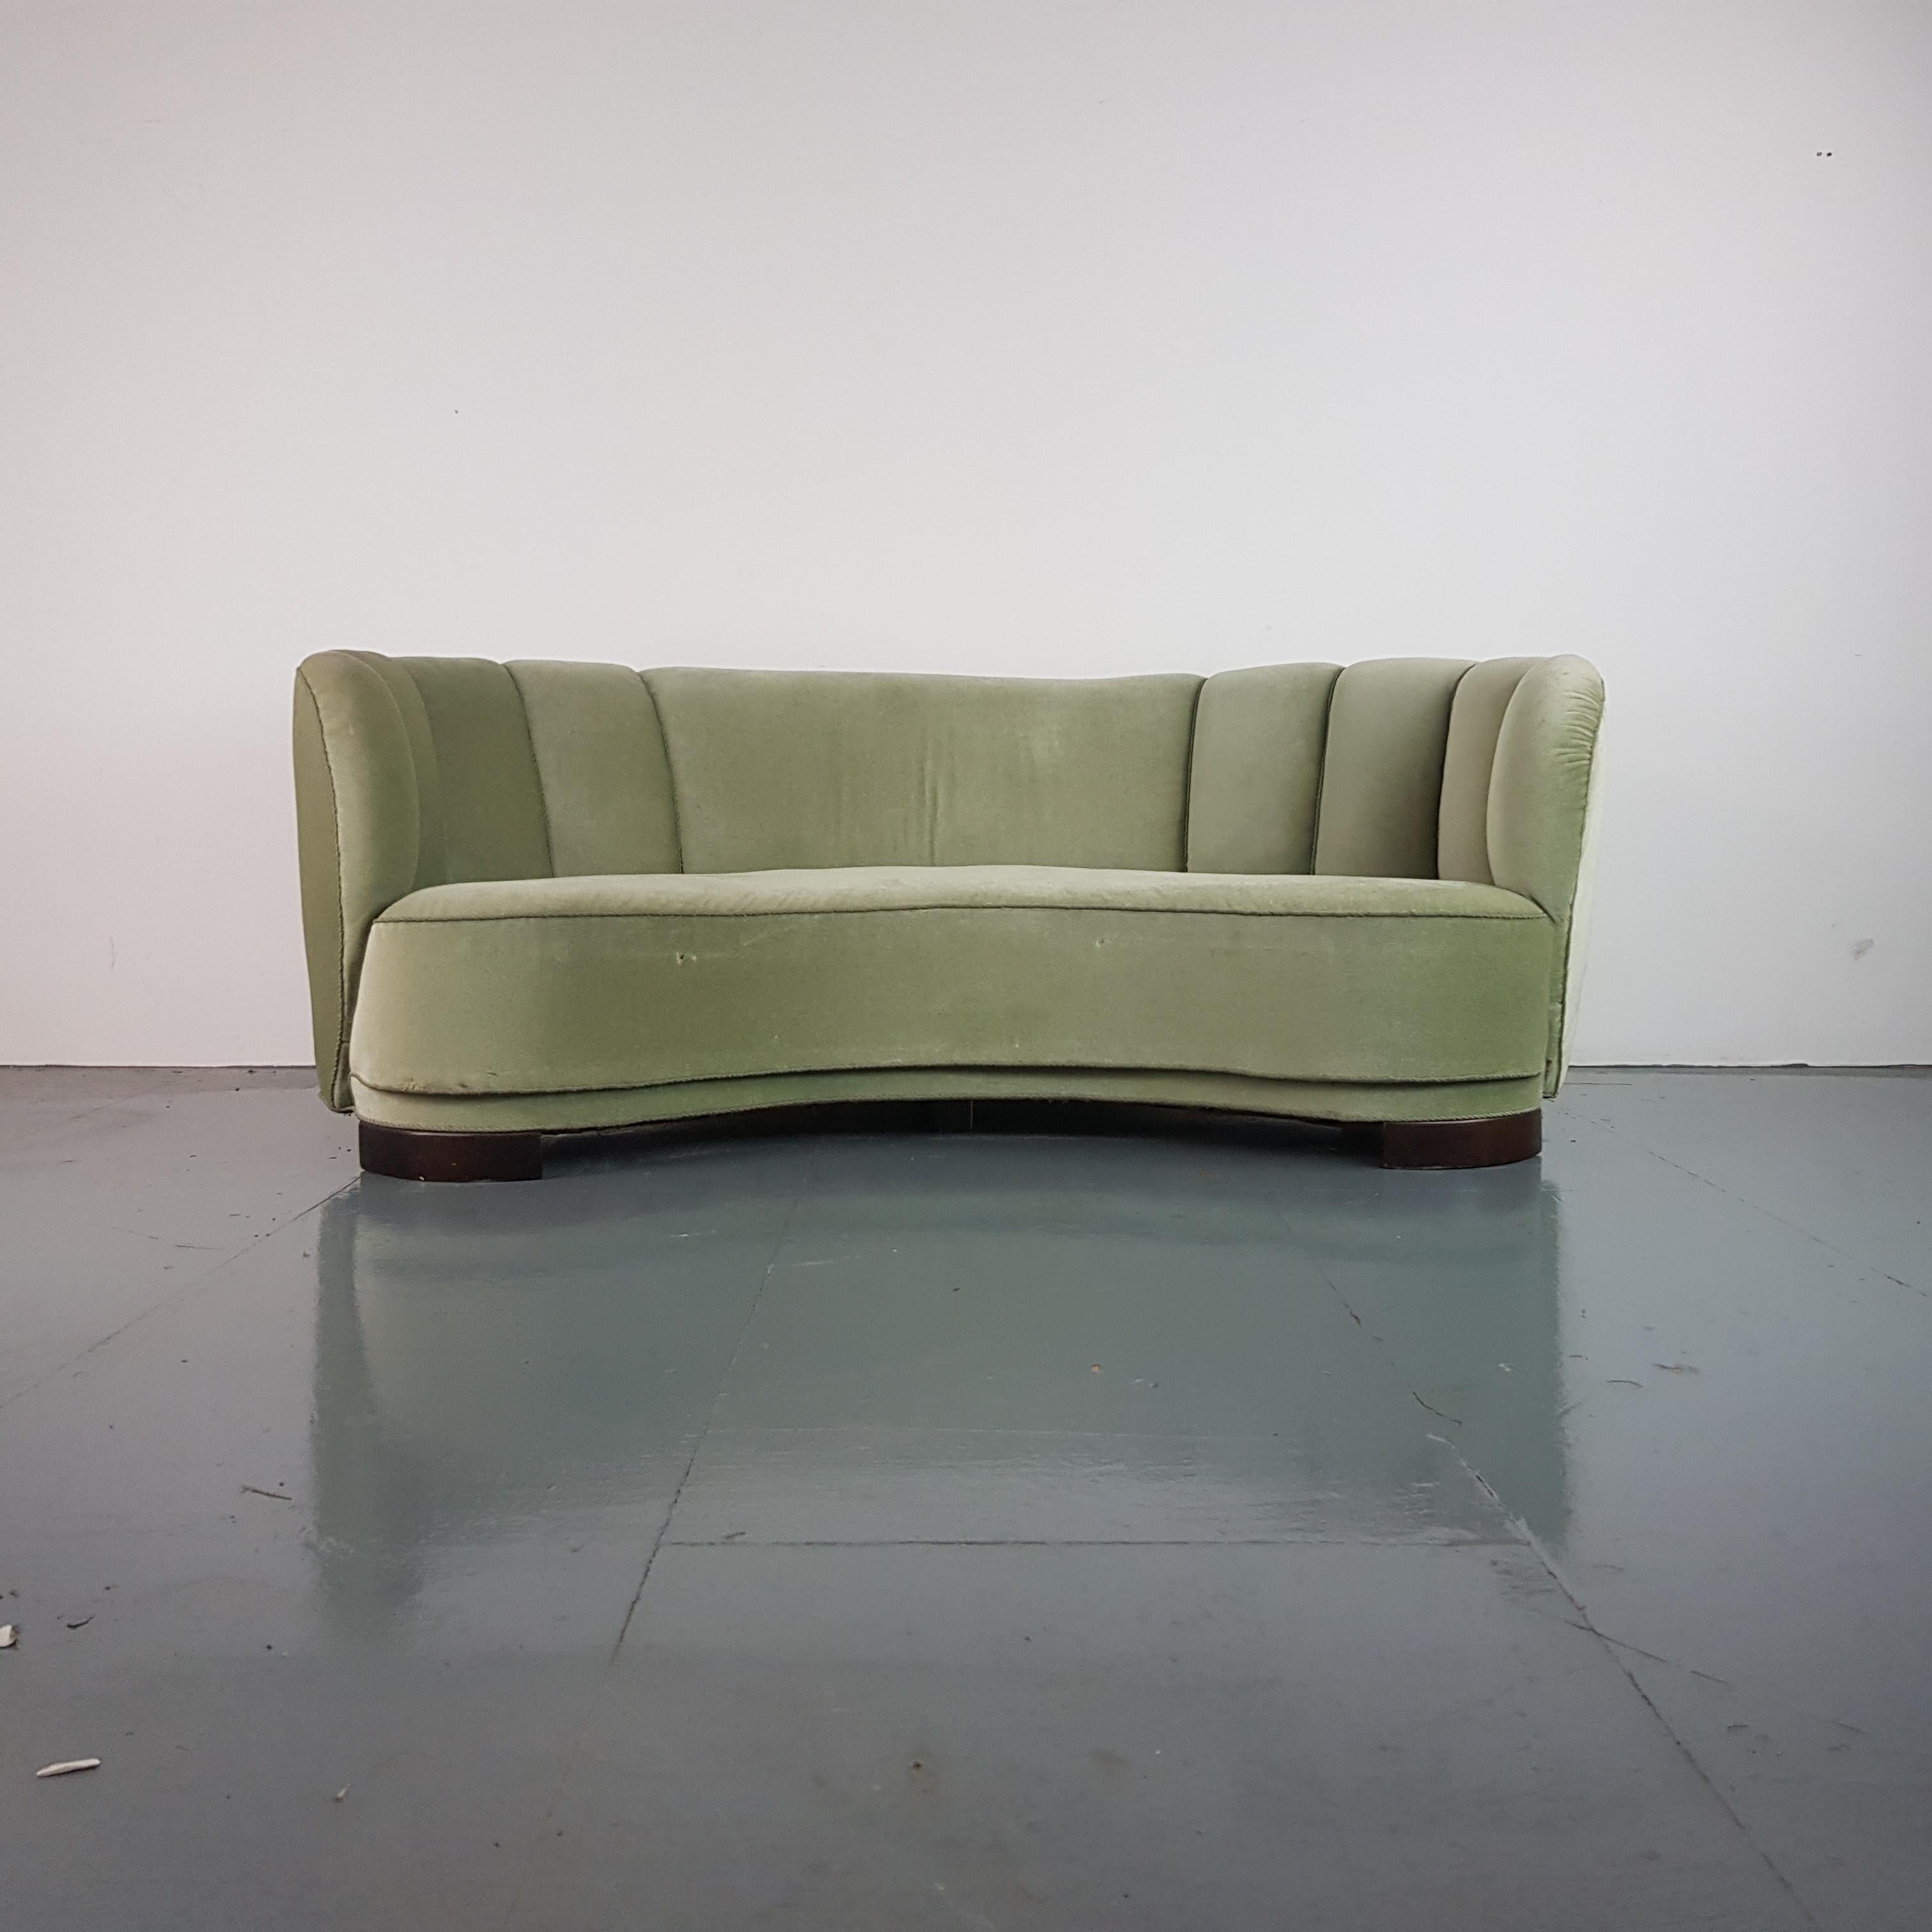 Vintage 1930s-1940s Danish Banana Sofa with Original Green Velvet Upholstery For Sale 3